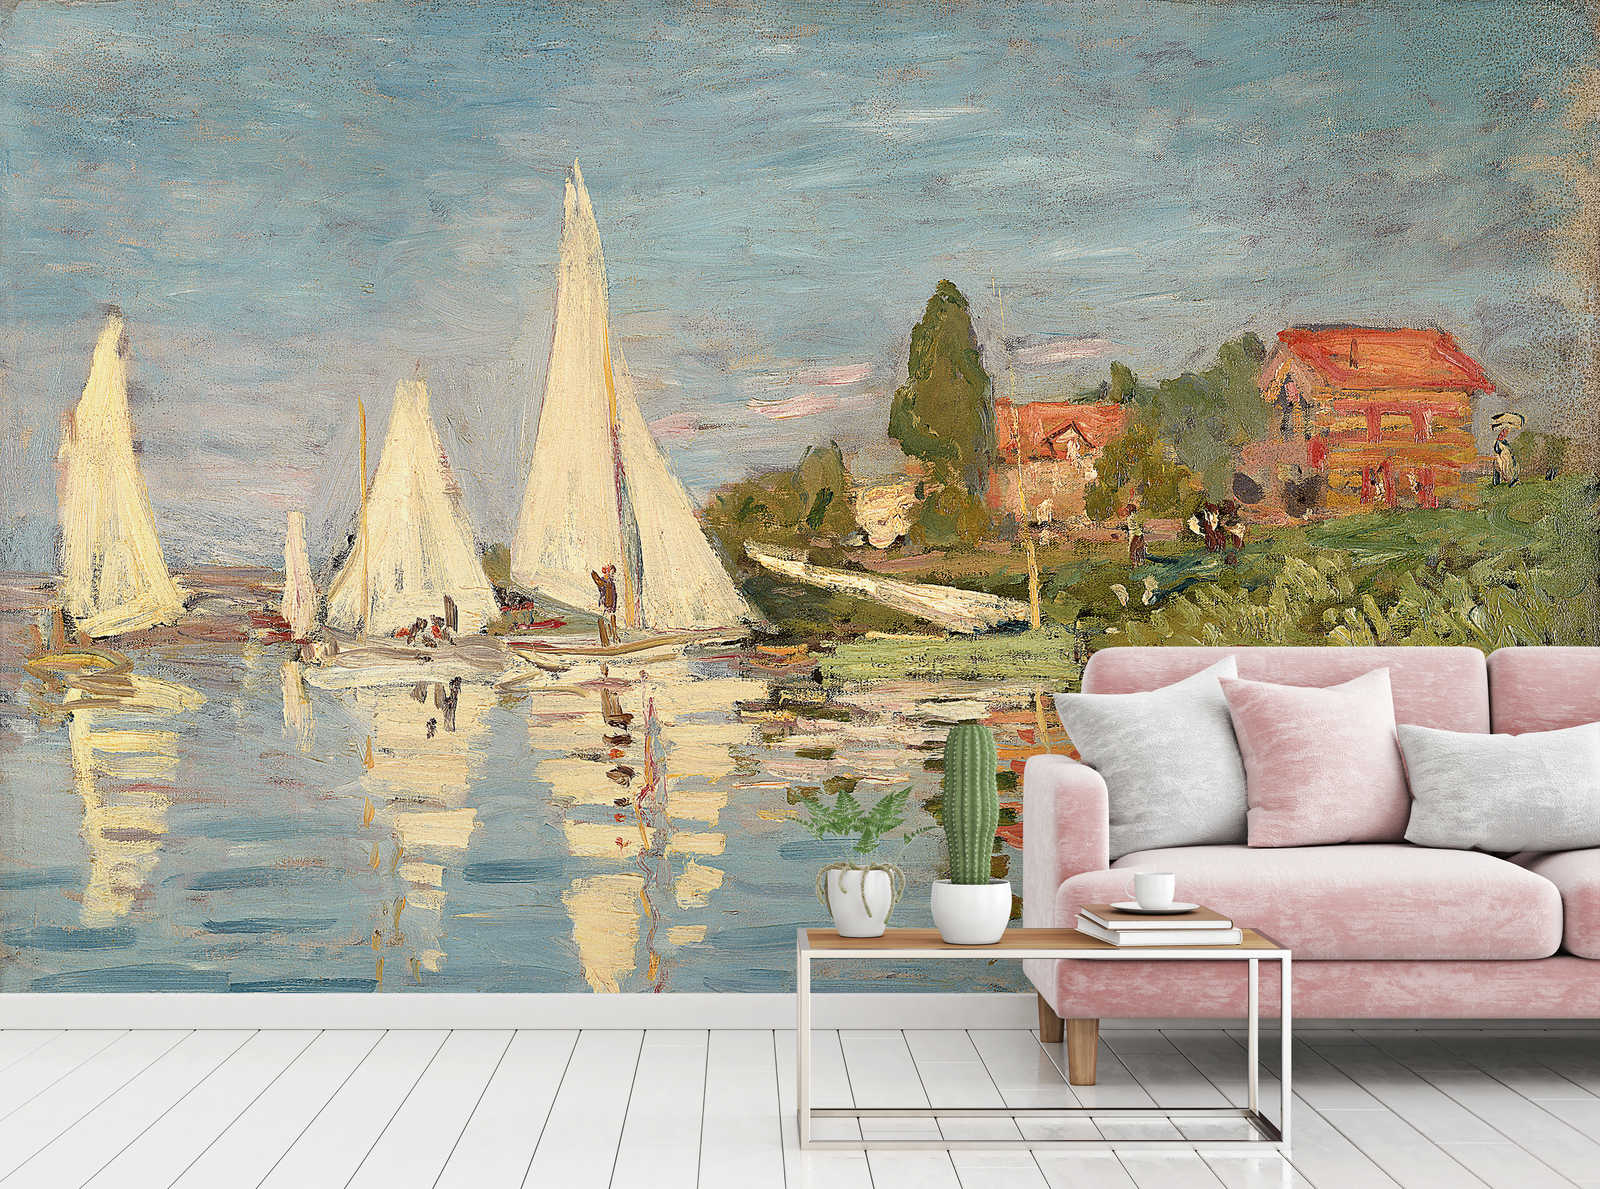             Papier peint panoramique "Danaé" de Claude Monet
        